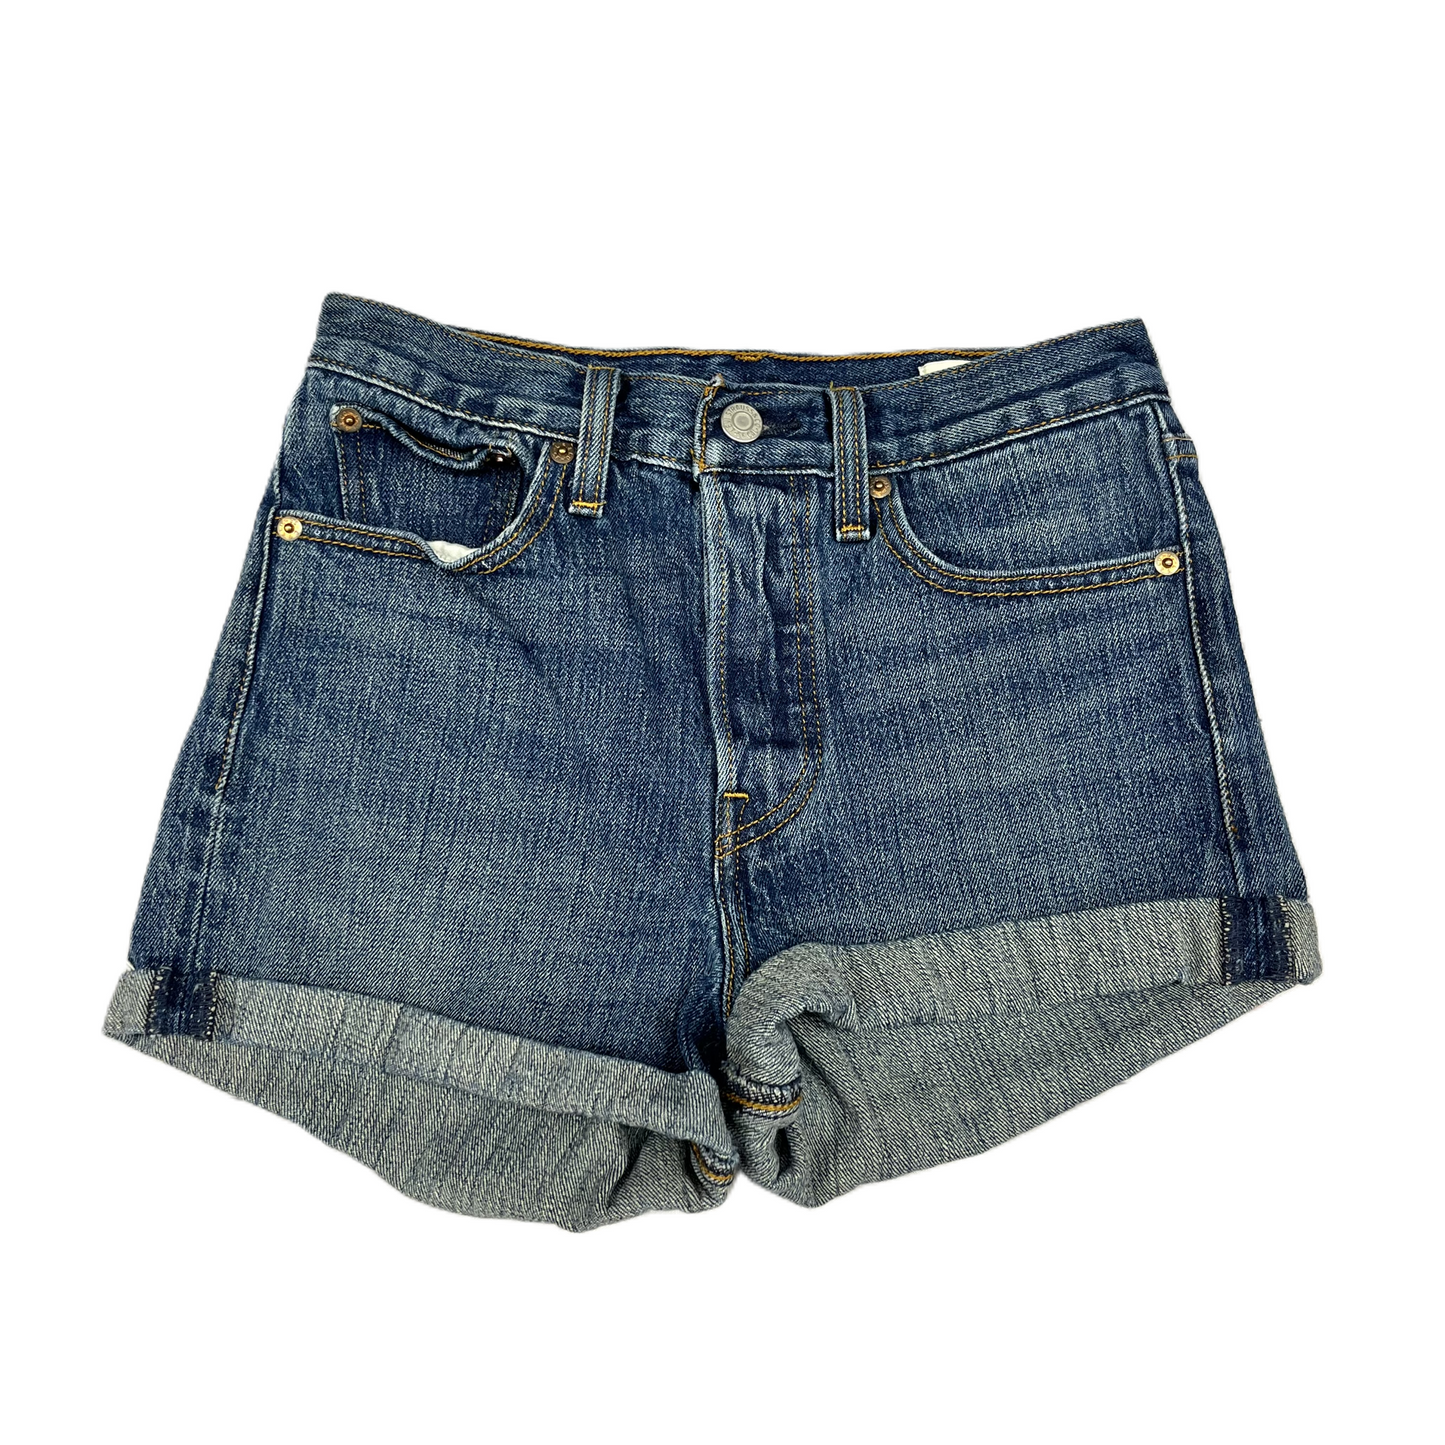 Blue Denim Shorts By Levis, Size: 4